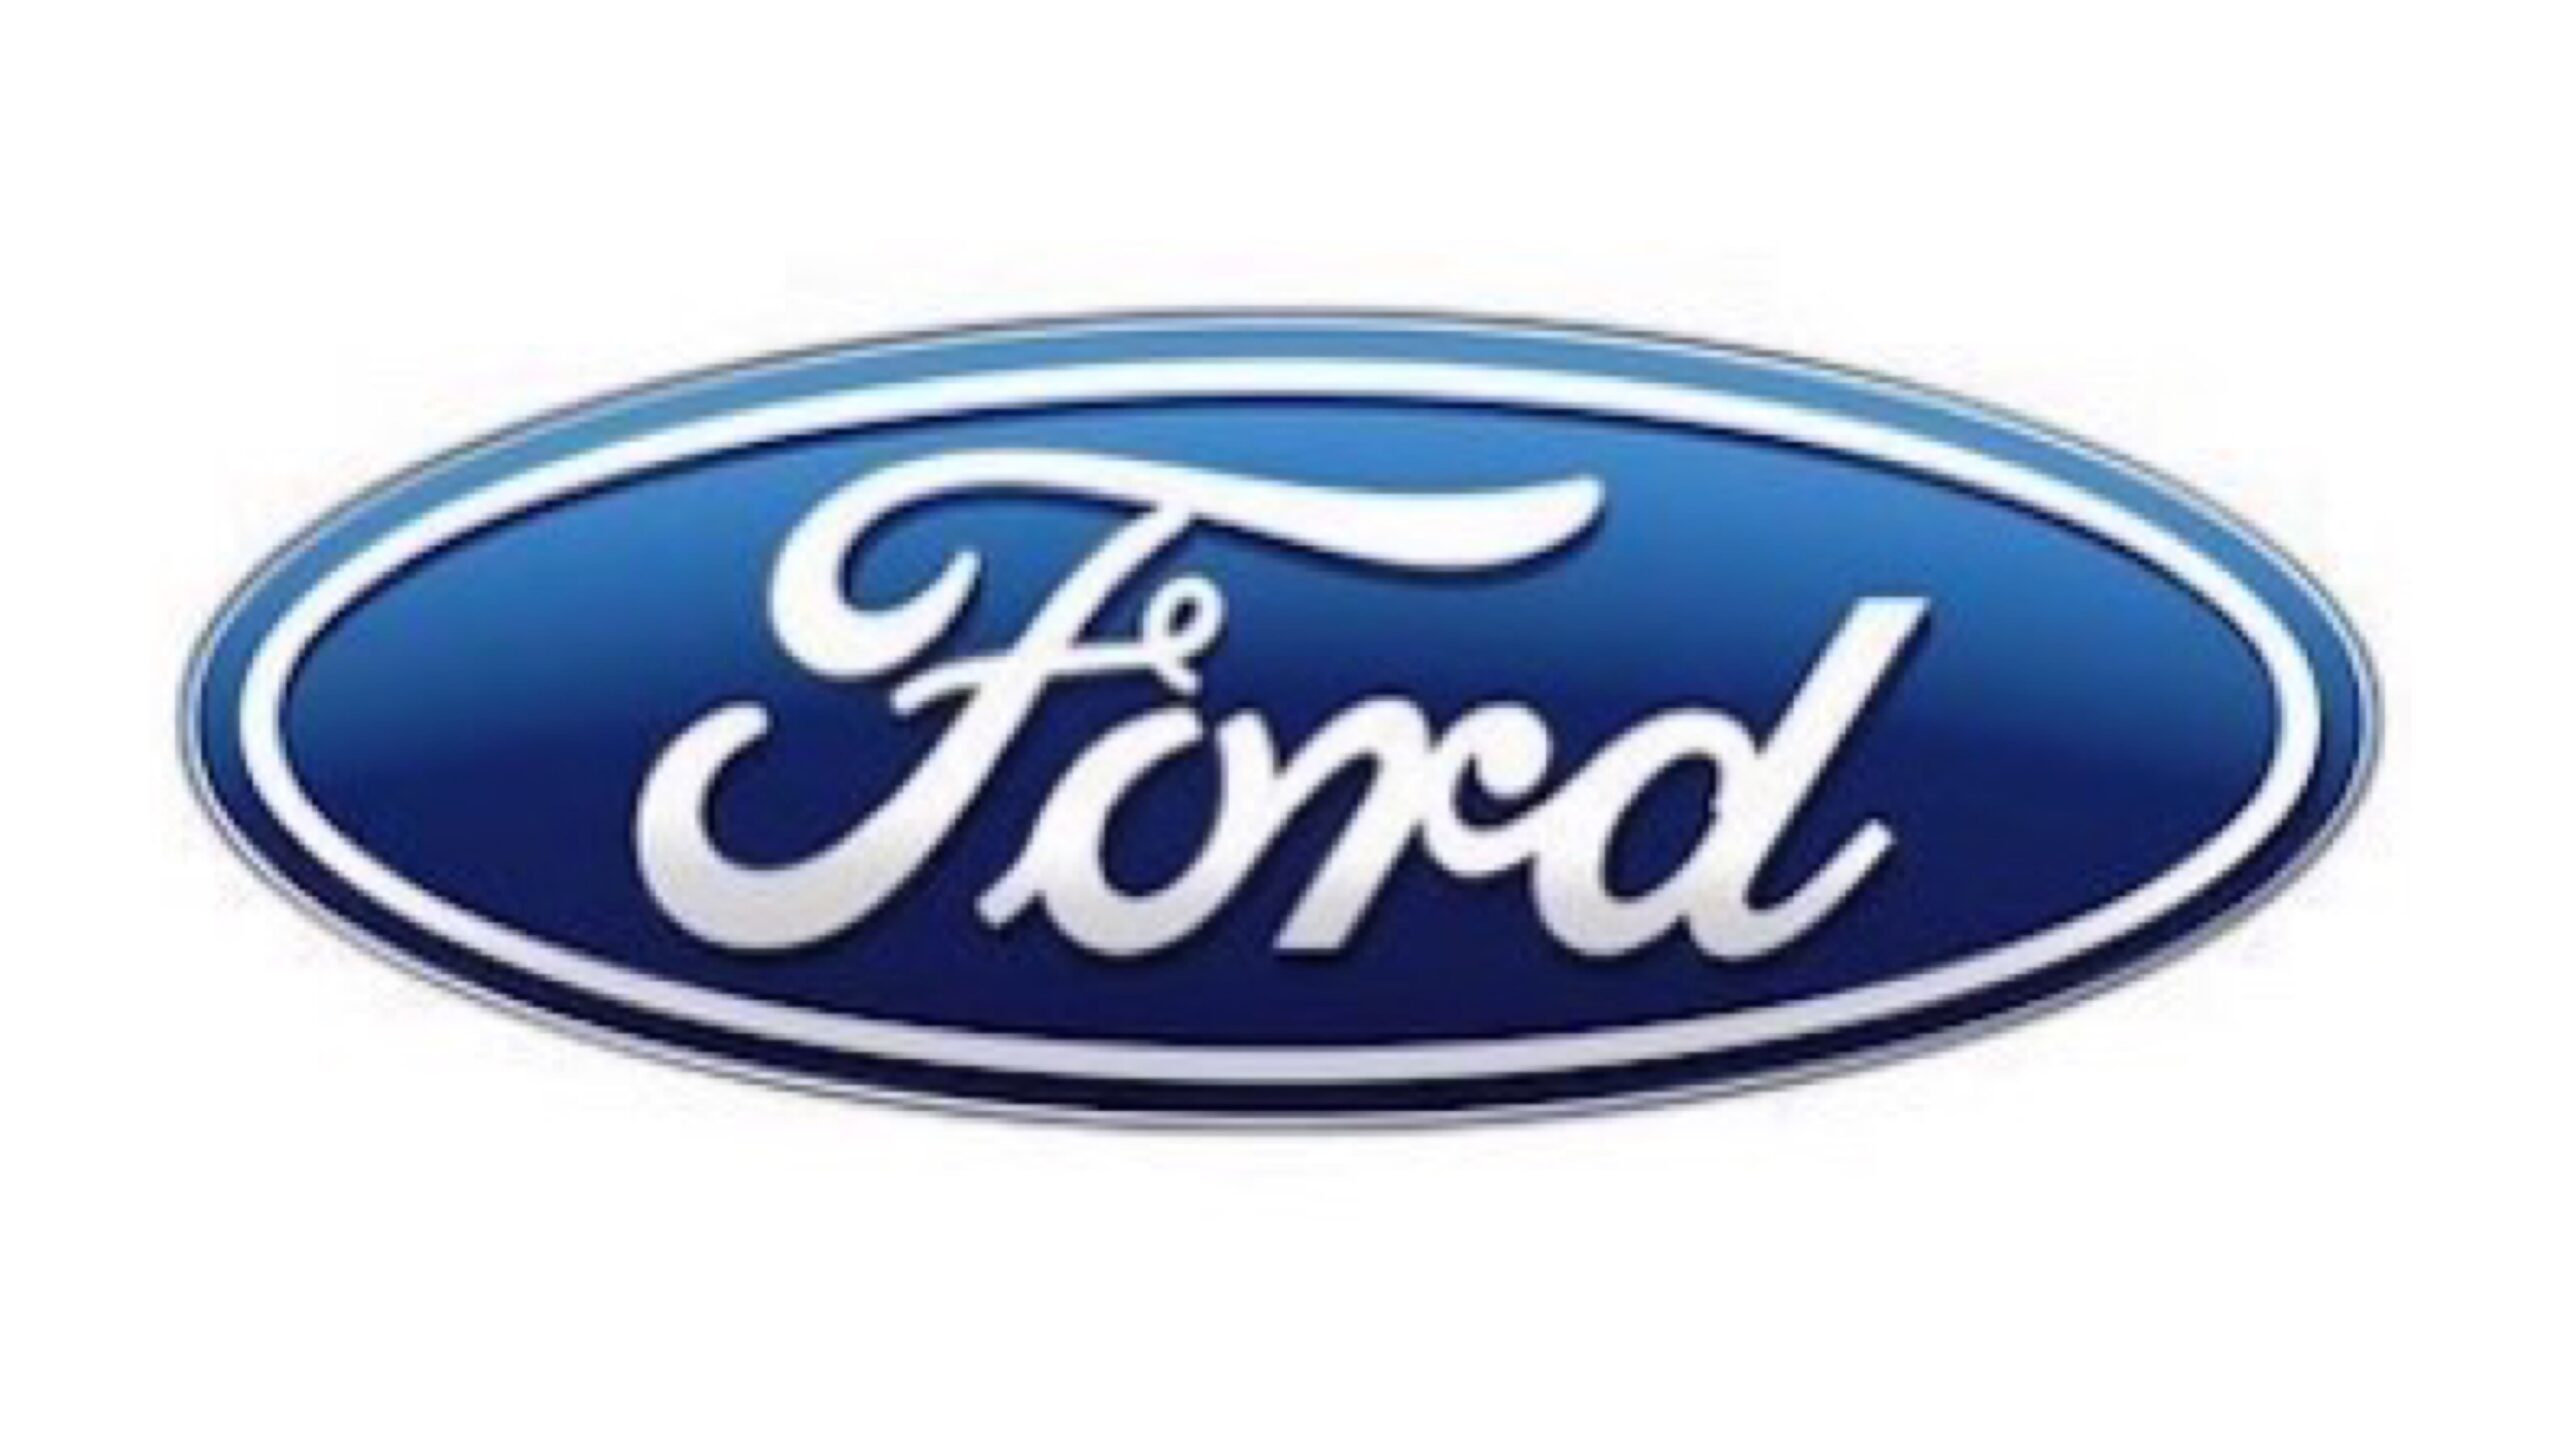 Ford Kuga 2018